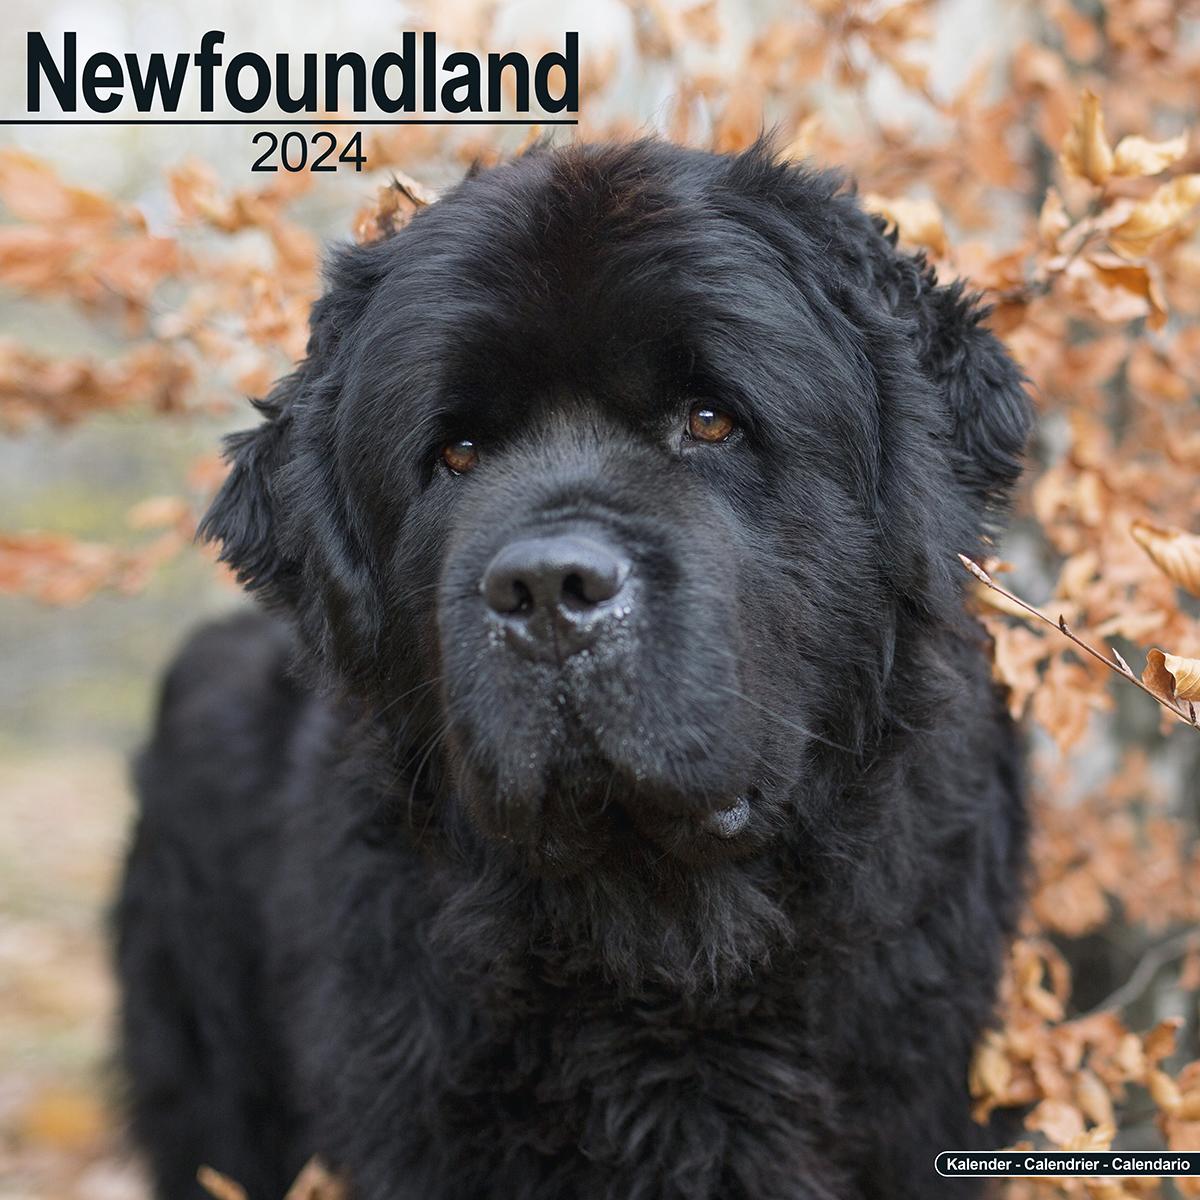 Newfoundland 2024 Calendar